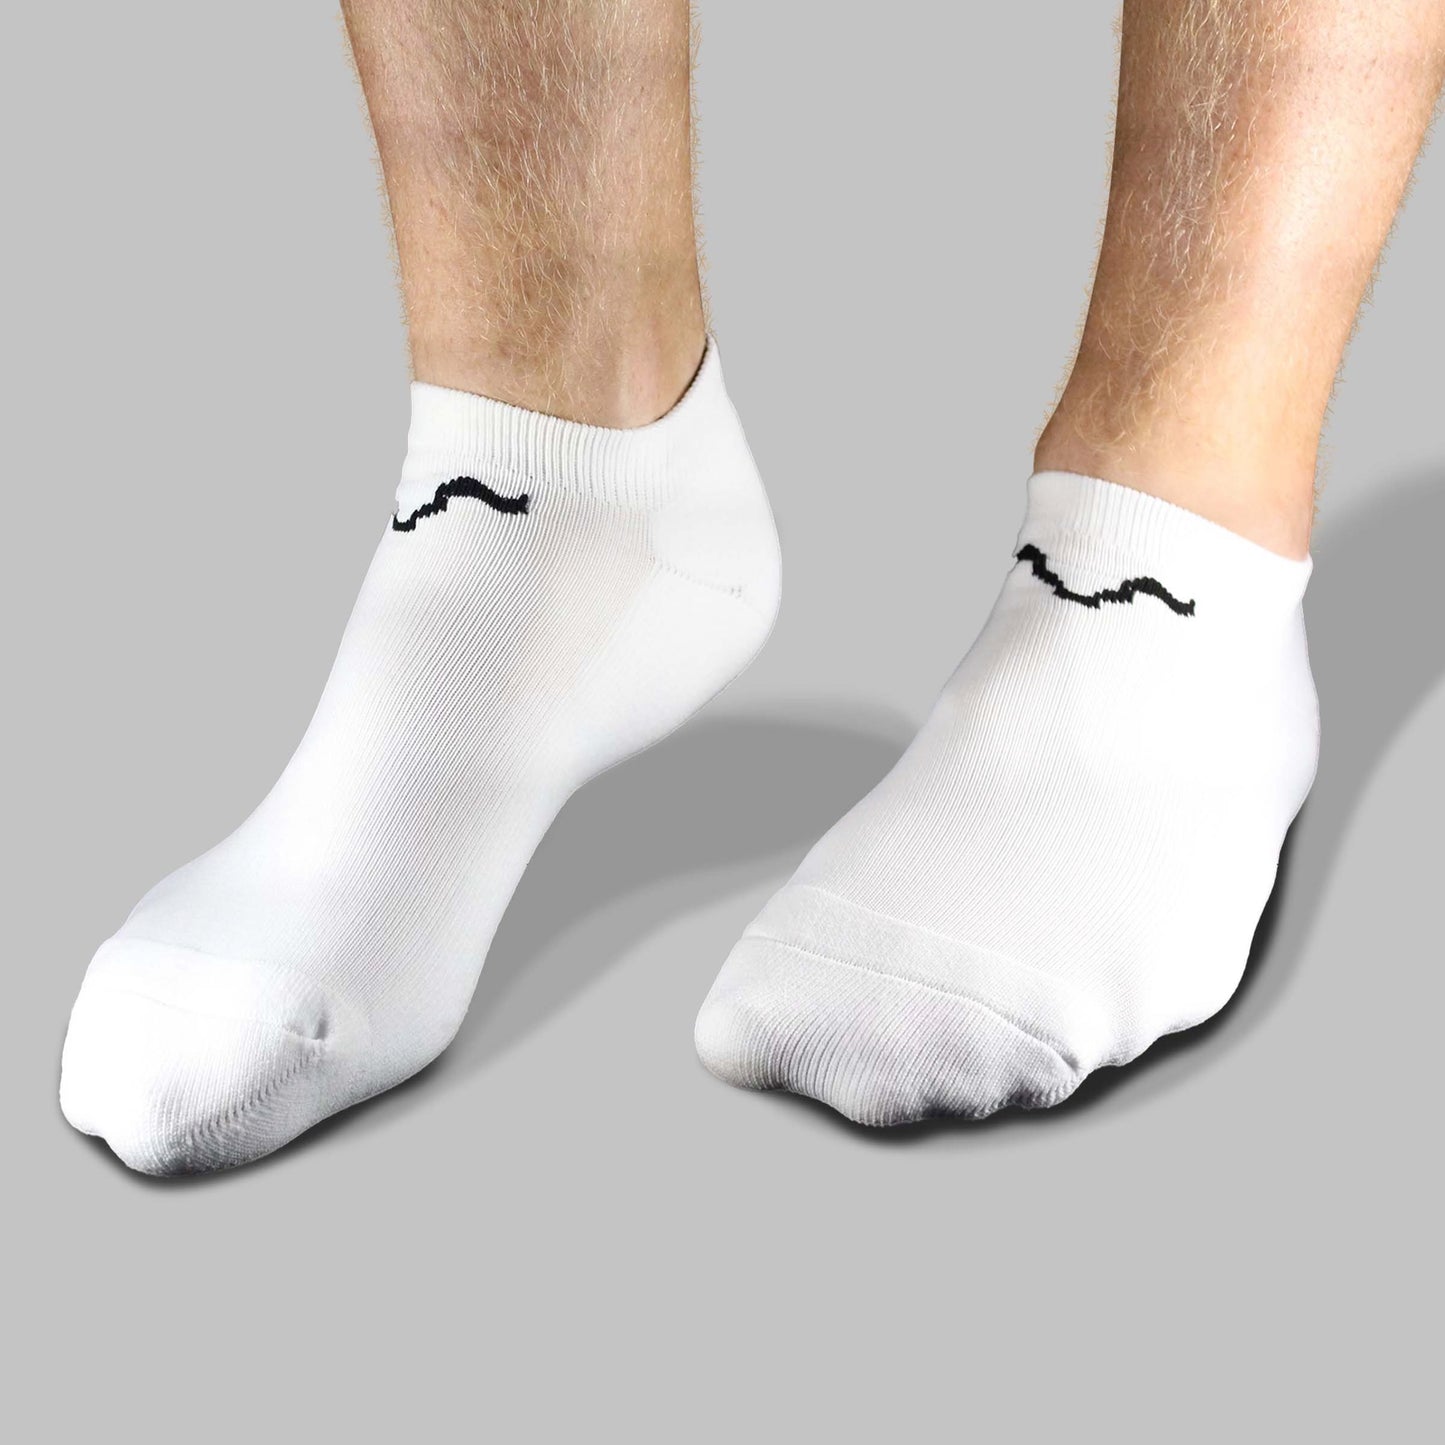 Women's Socks Single Pack - White